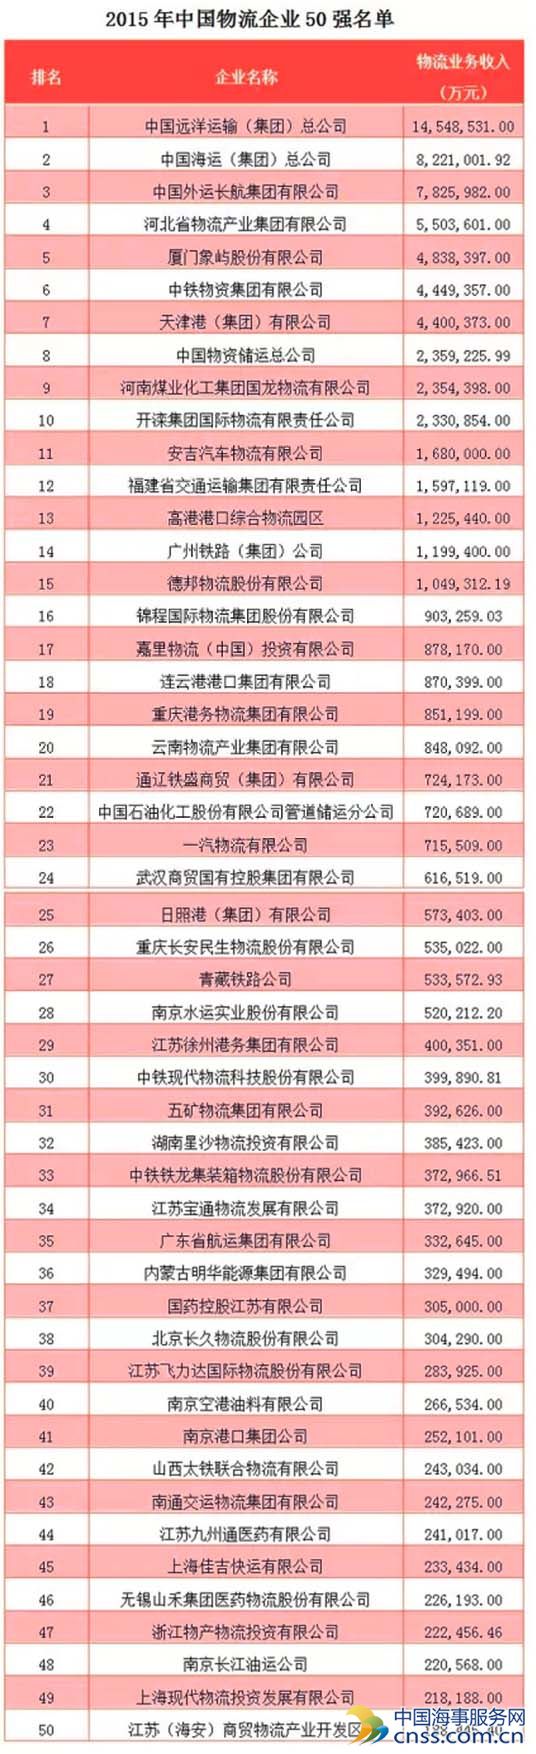  2015中国物流企业50强榜单出炉